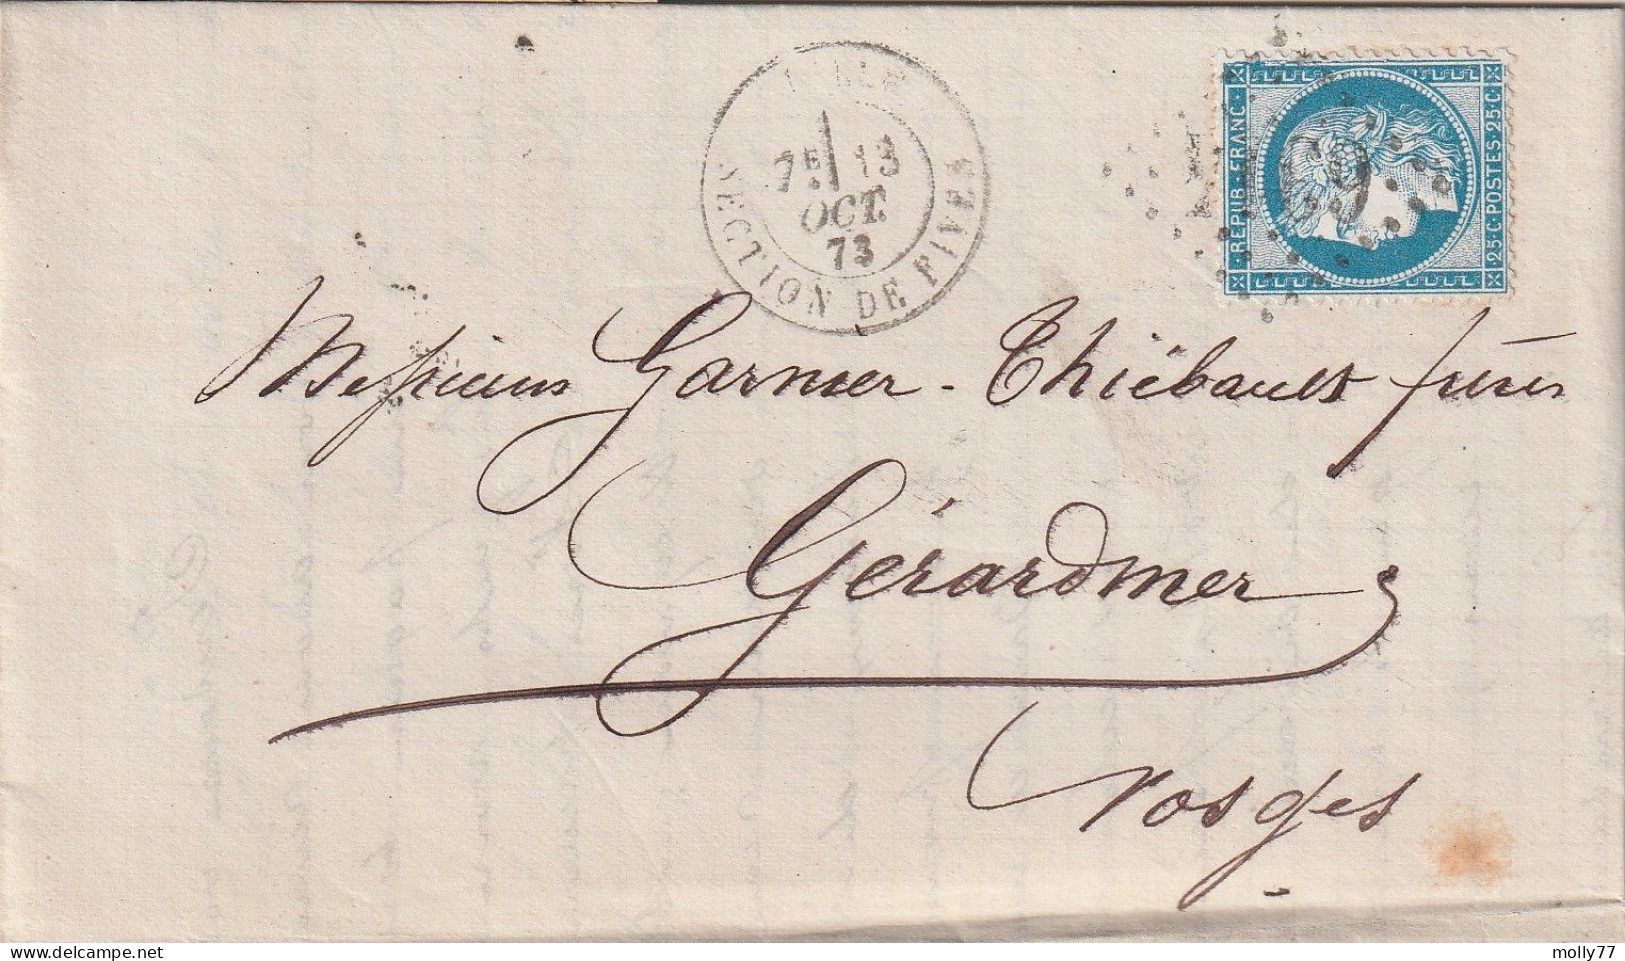 Lettre De Lille à Gérardmer LAC - 1849-1876: Classic Period